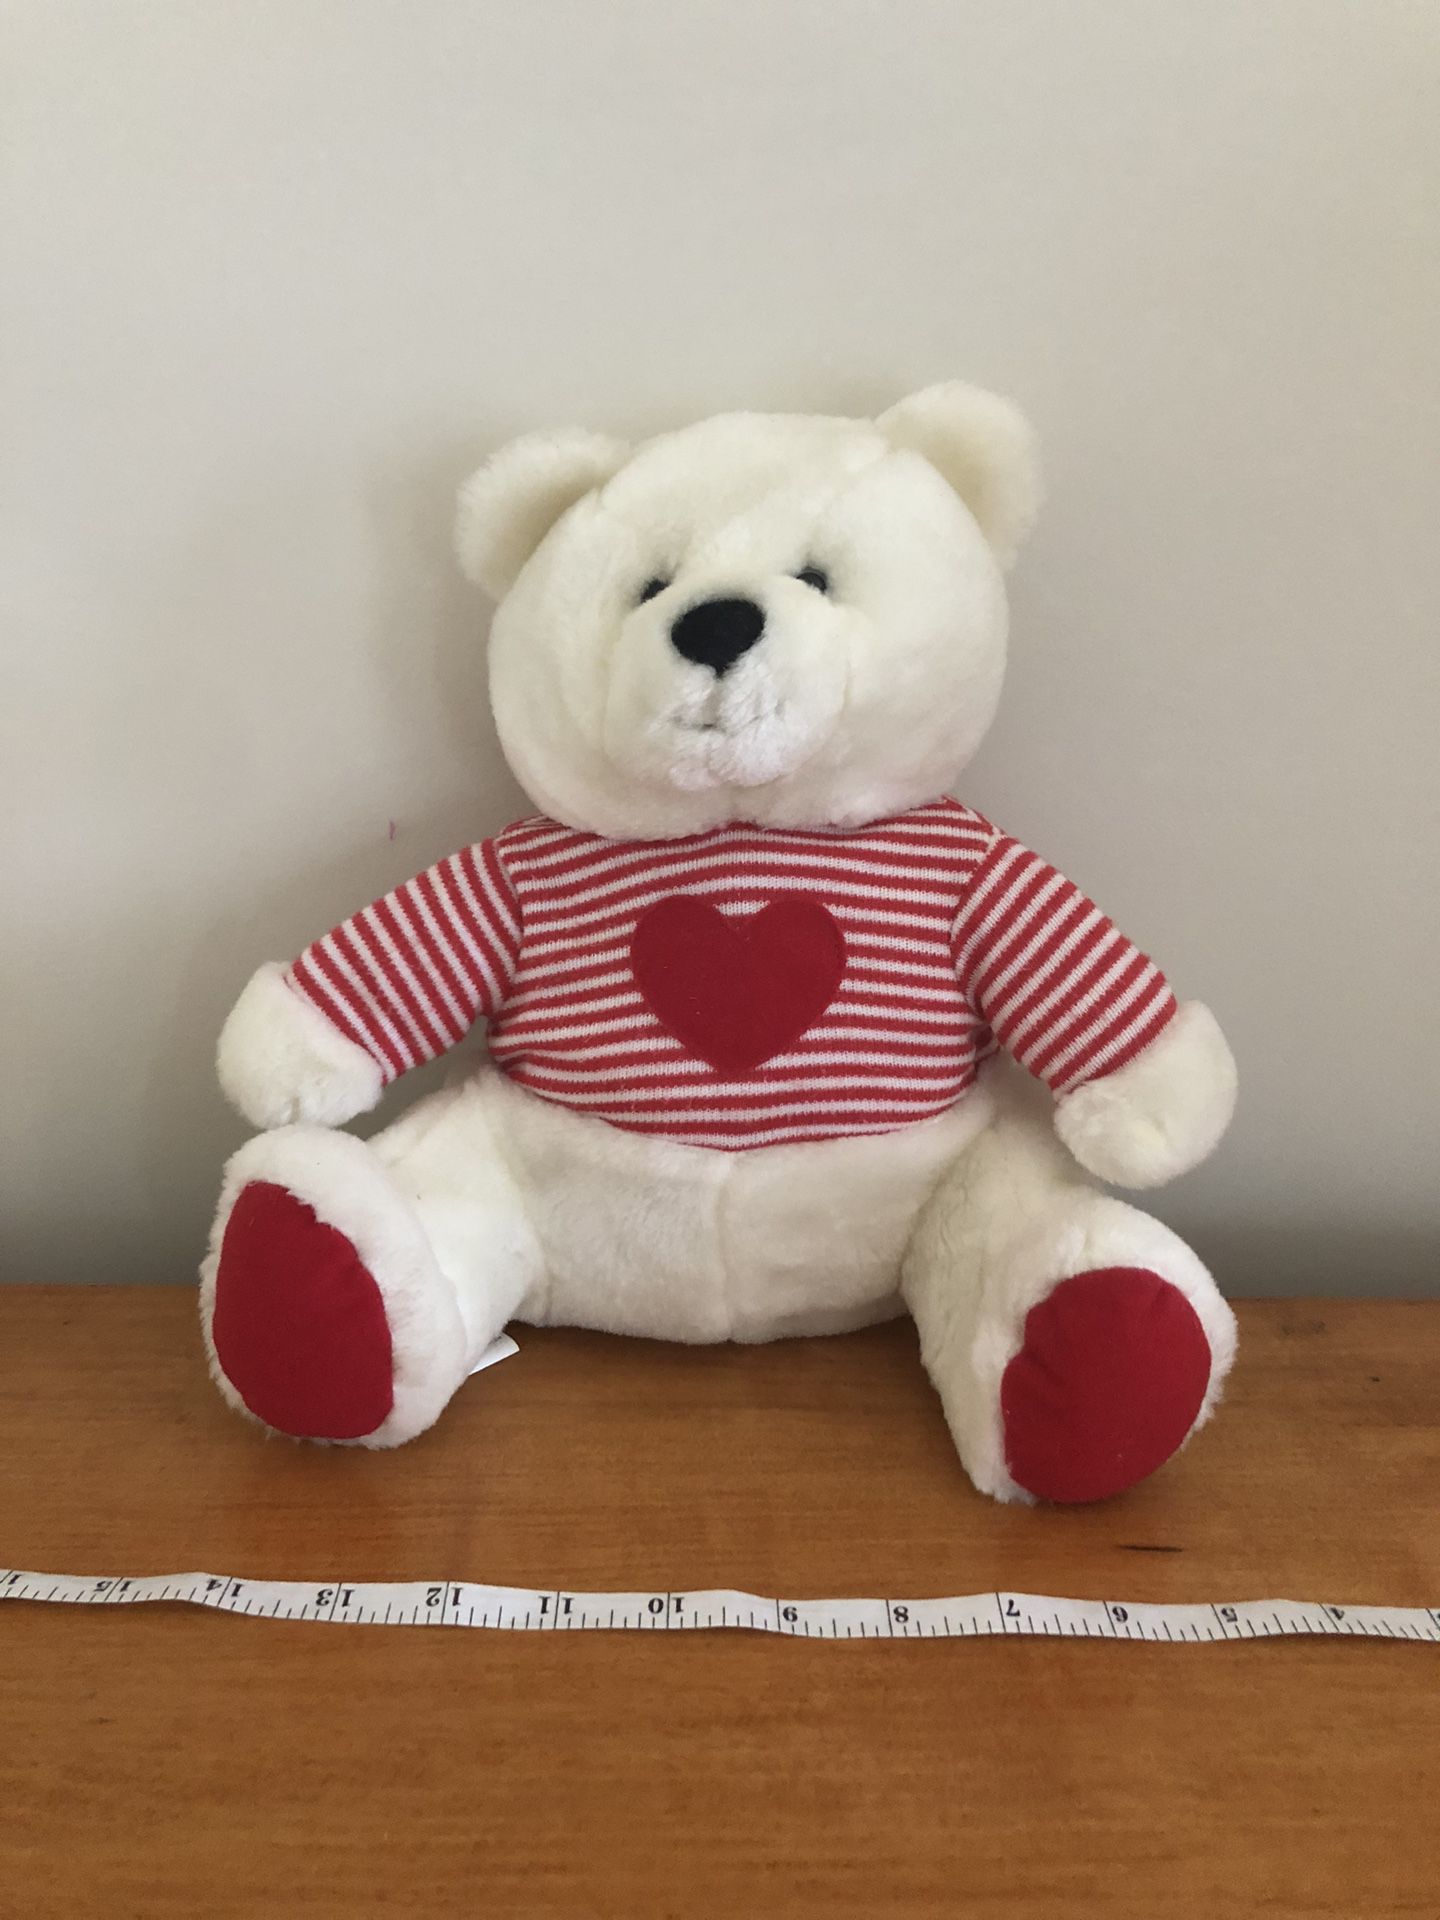 Super Soft Stuffed Teddy Bear